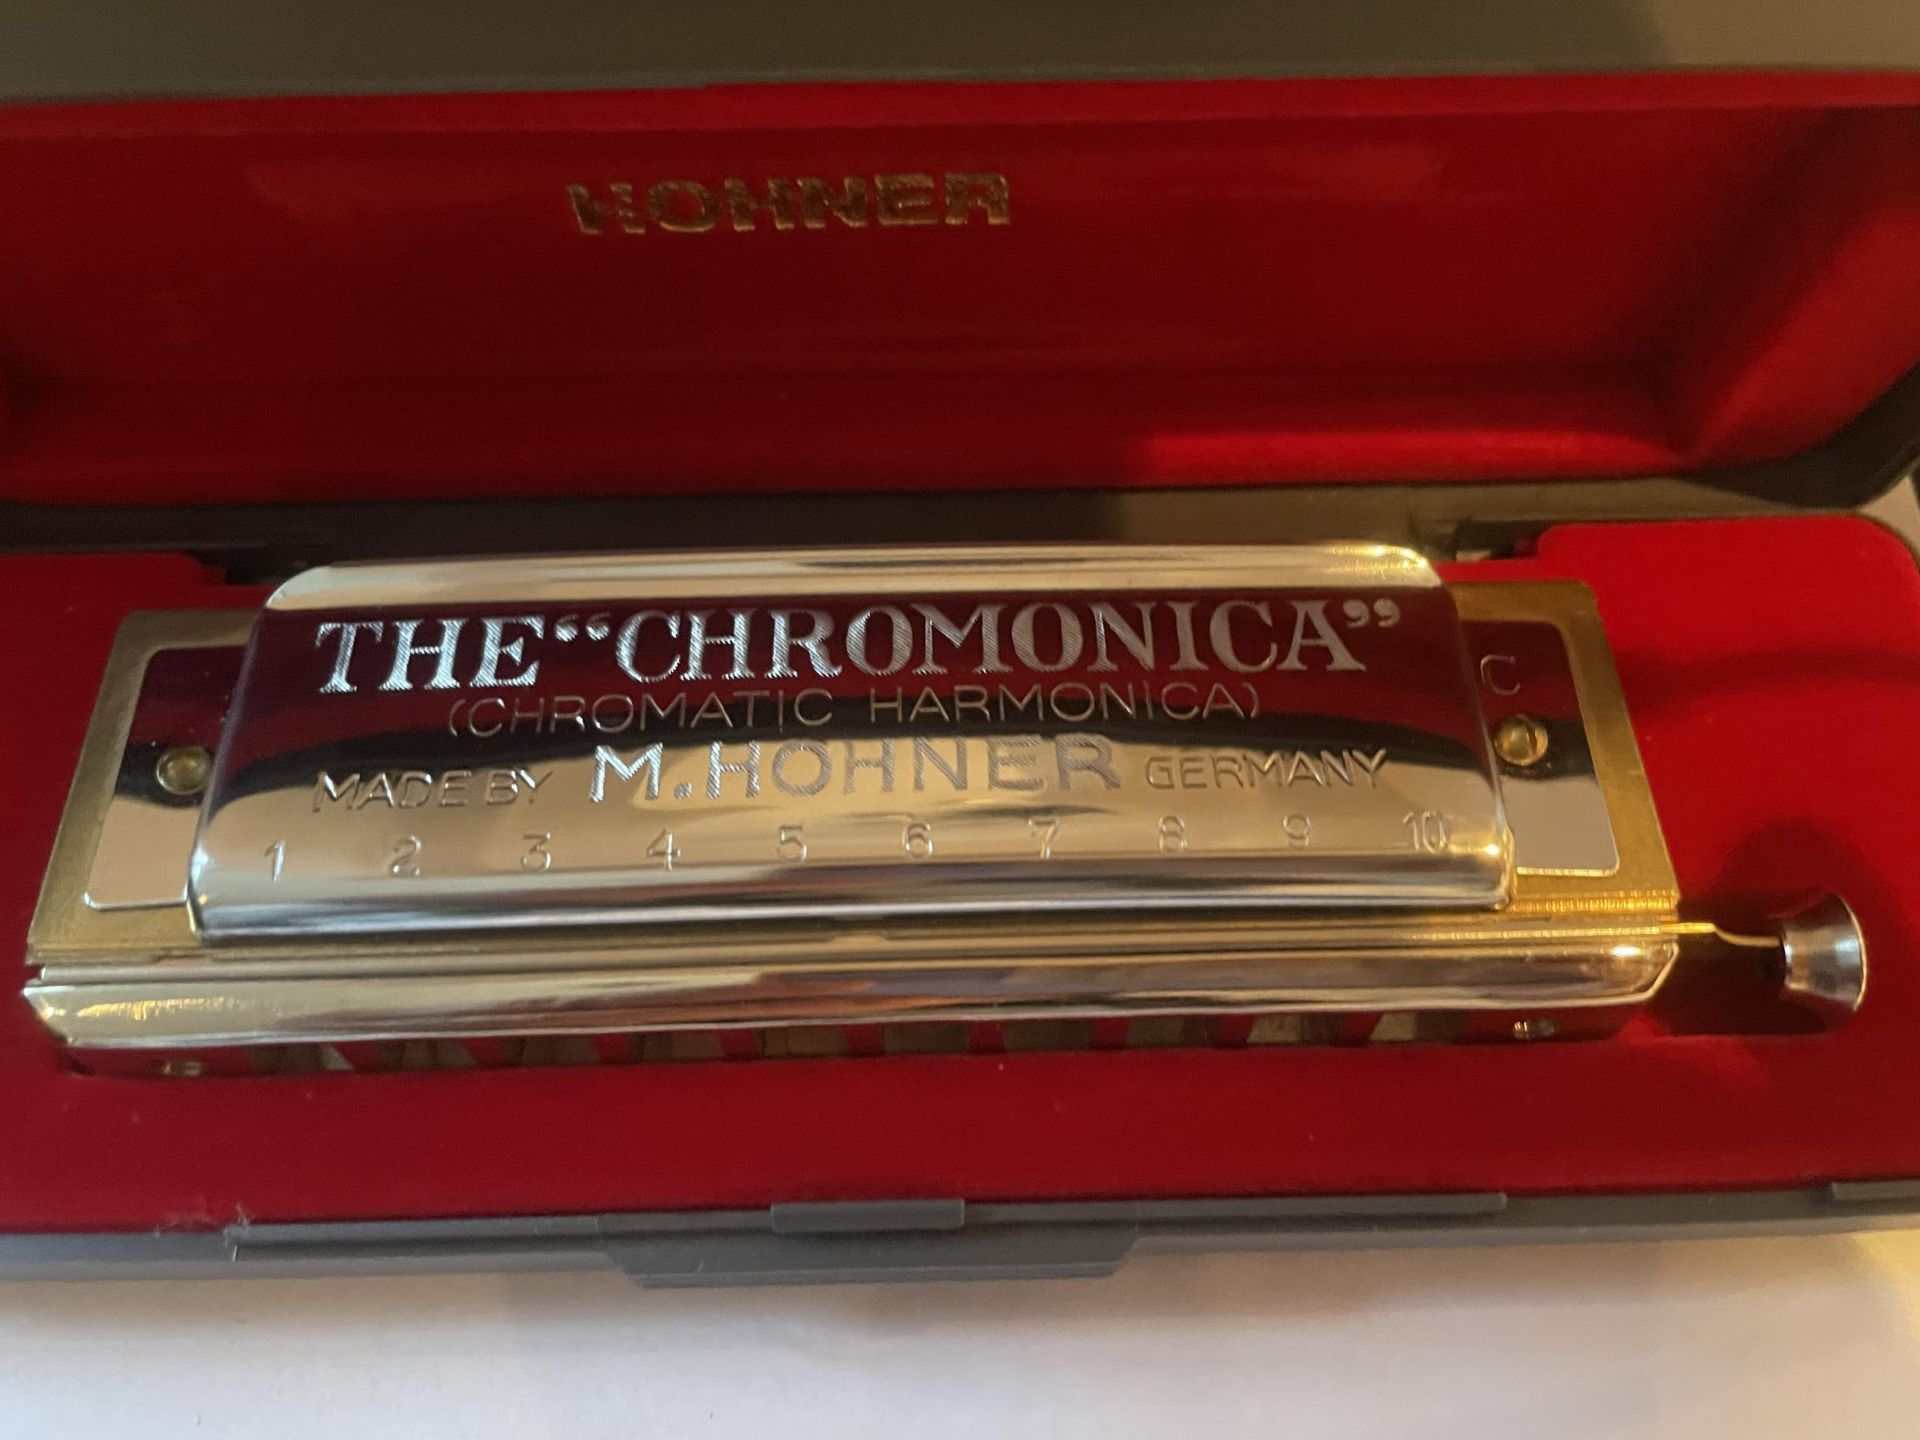 A HOHNER CHROMONICA 260 HARMONICA WITH ORIGINAL CASE - Image 2 of 5